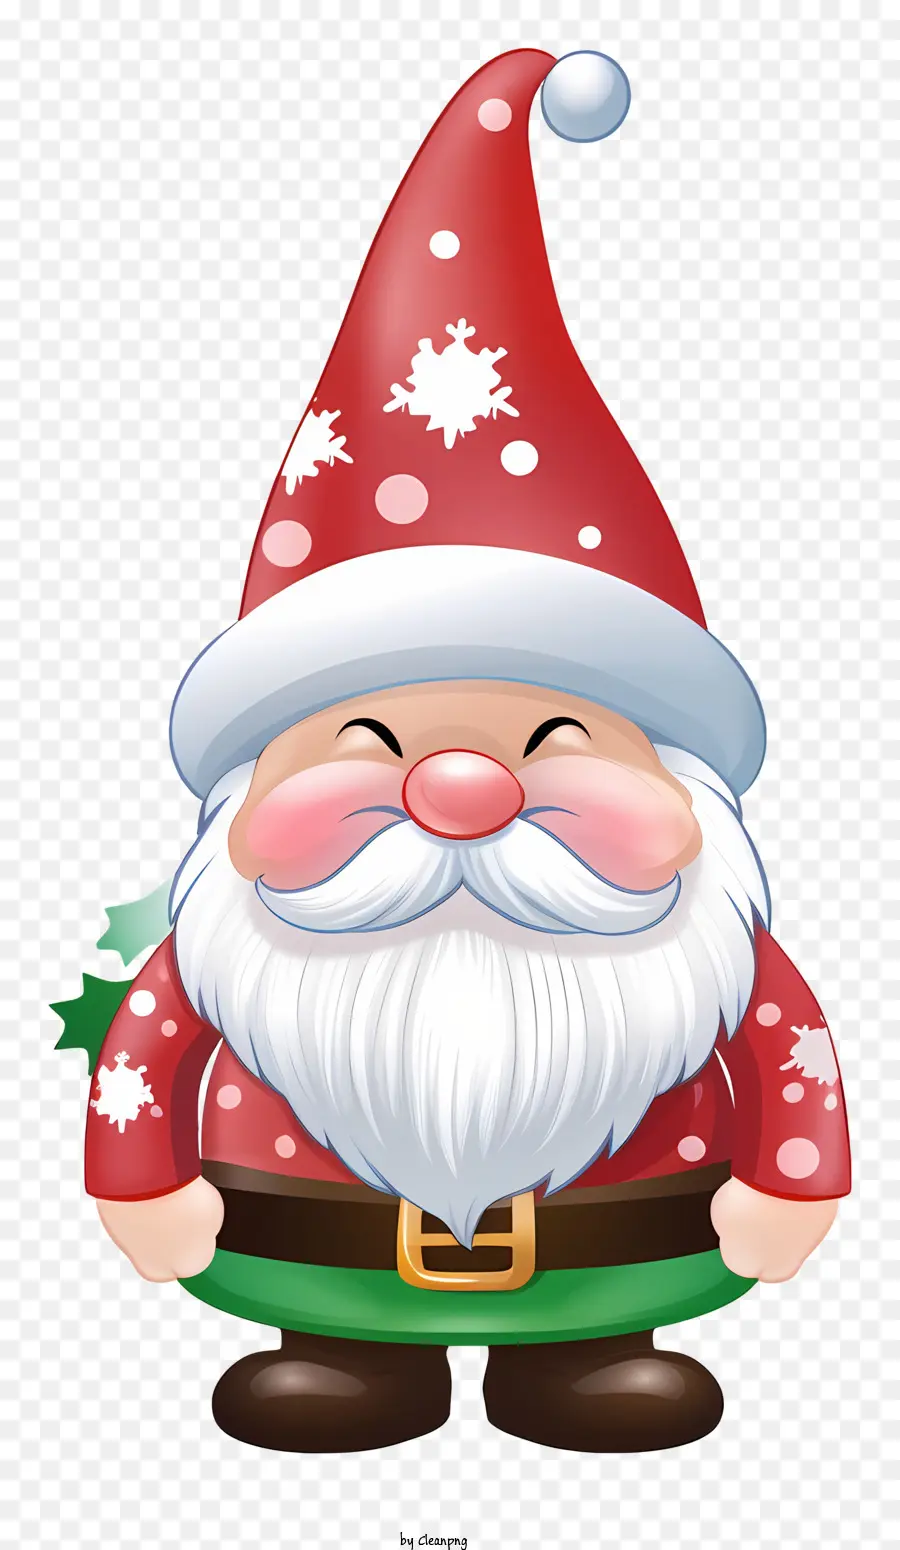 Phim hoạt hình Santa Claus Santa Claus Trang phục màu xanh lá cây màu xanh lá cây và màu đỏ áo choàng màu xanh lá cây và màu đỏ - Phim hoạt hình ông già Noel trong trang phục đen trắng